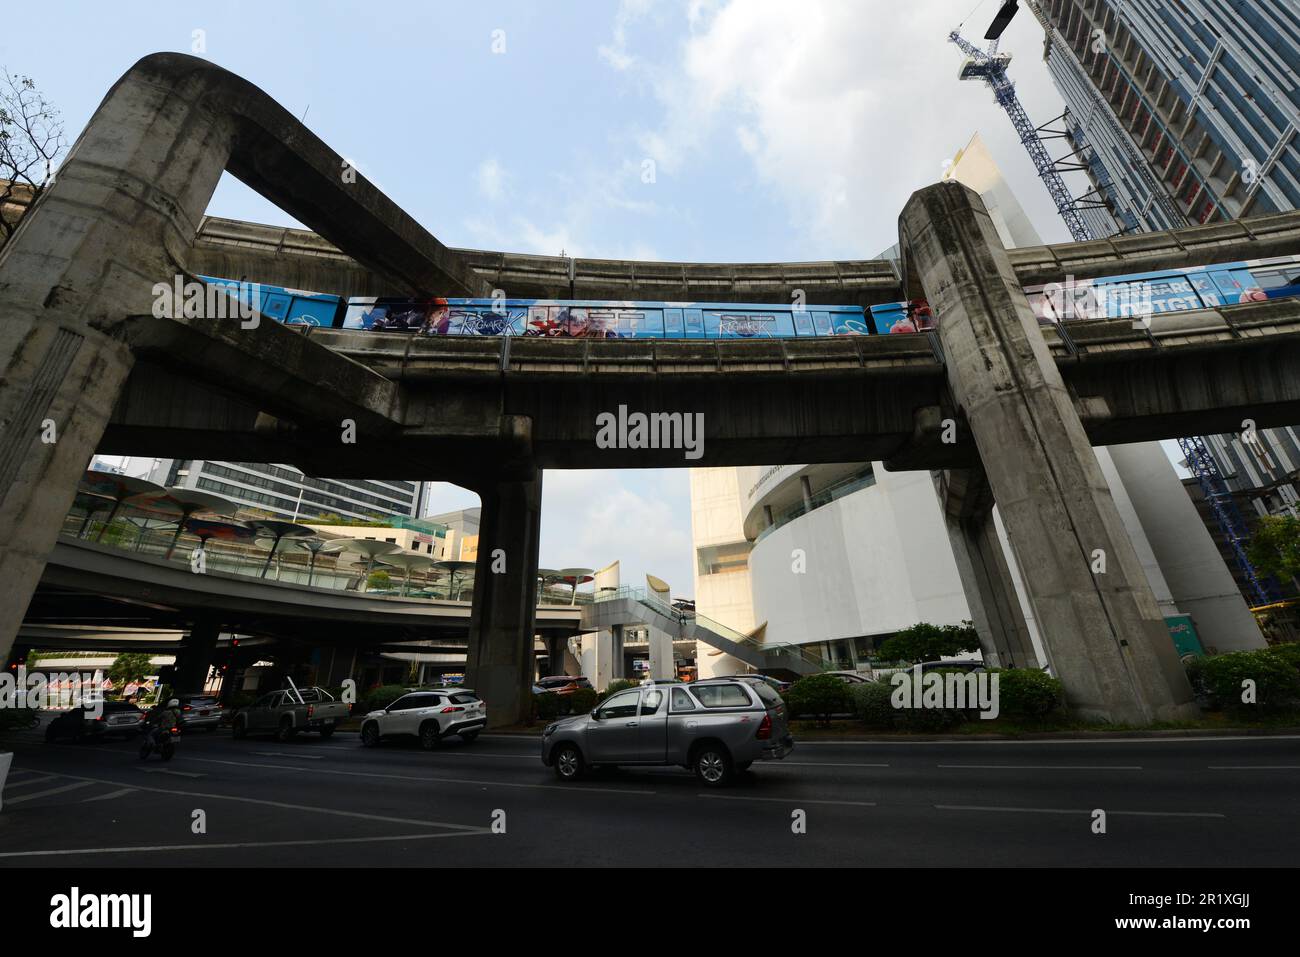 Le BTS Skytrain près de Siam Square sur Phaya Thai Road dans le centre de Bangkok, en Thaïlande. Banque D'Images